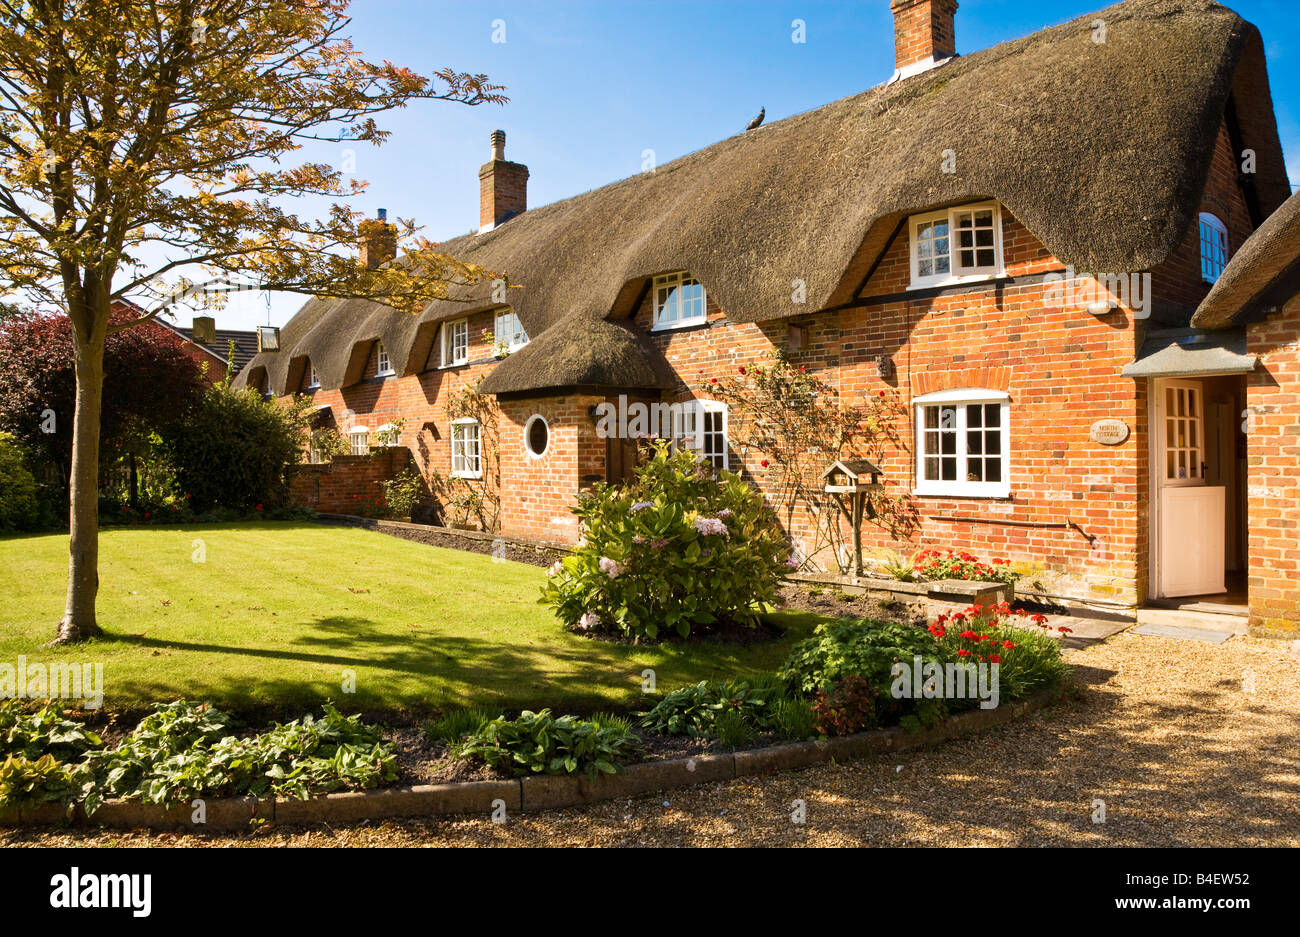 Anglais assez typique chalet chaume ou maison du village de tous les Cannings, Wiltshire, Angleterre, Grande-Bretagne, Royaume-Uni Banque D'Images